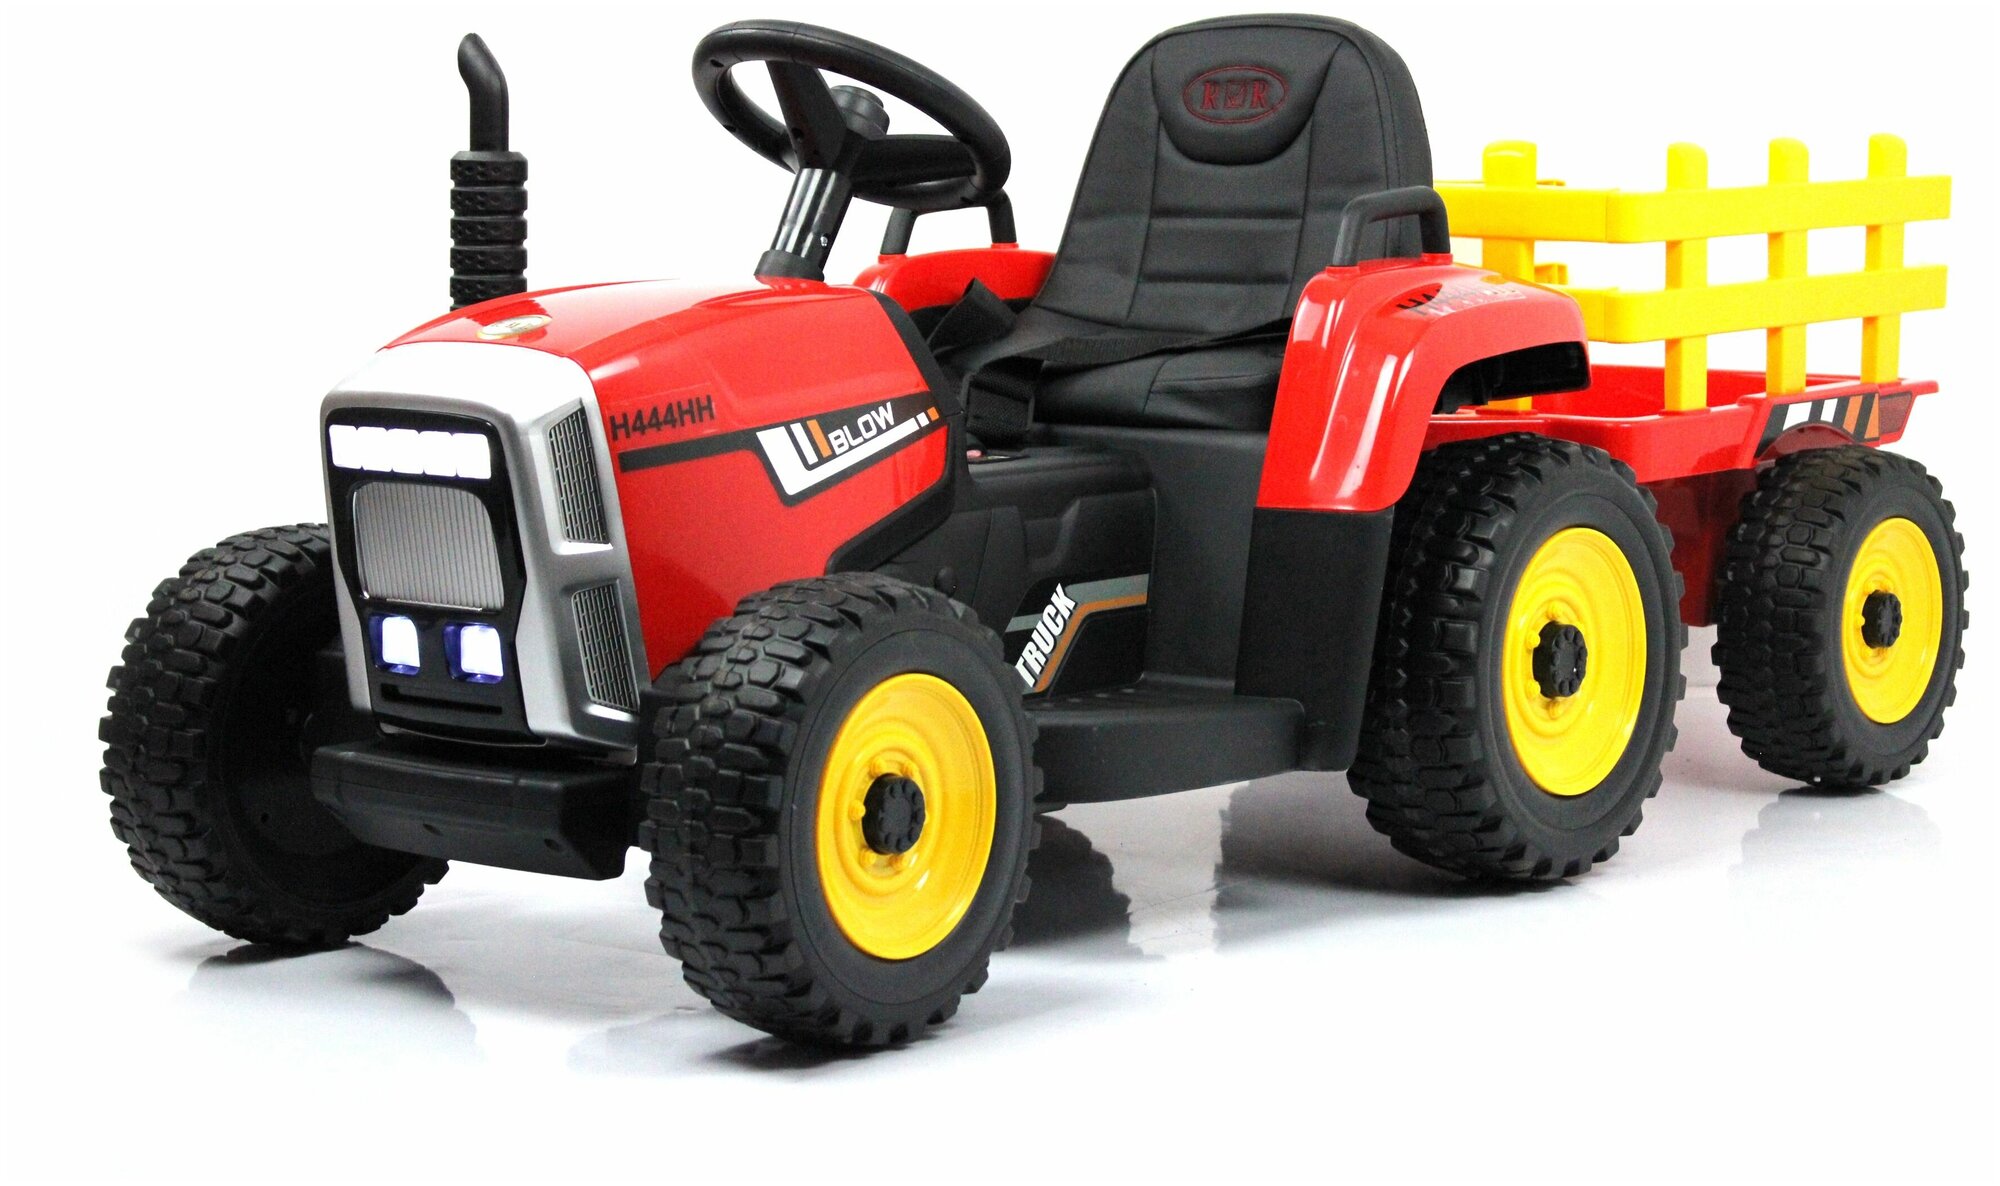 Детский электромобиль-трактор H444HH красный